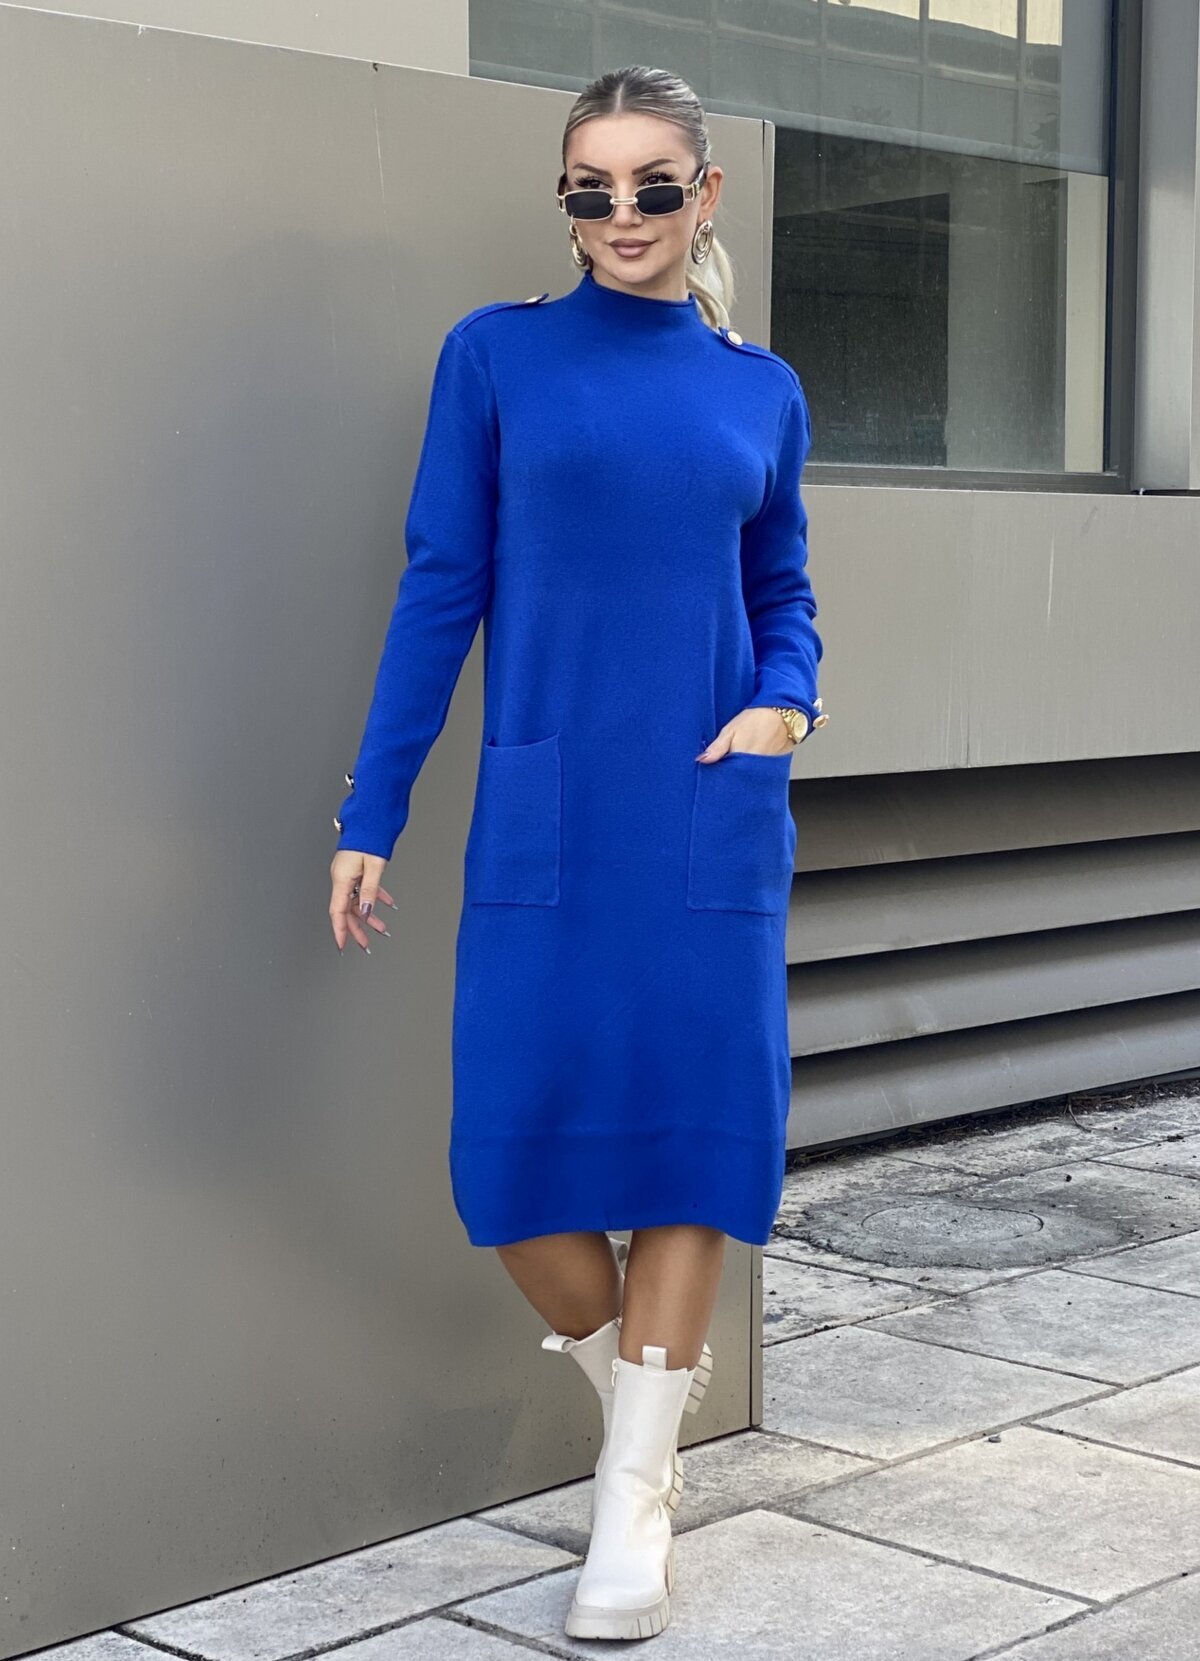 ανθυγιεινός Αύξηση σημερινή εποχή μαλρυ φορεμα μπλε κο πληθωρισμός τέλεξ Μου